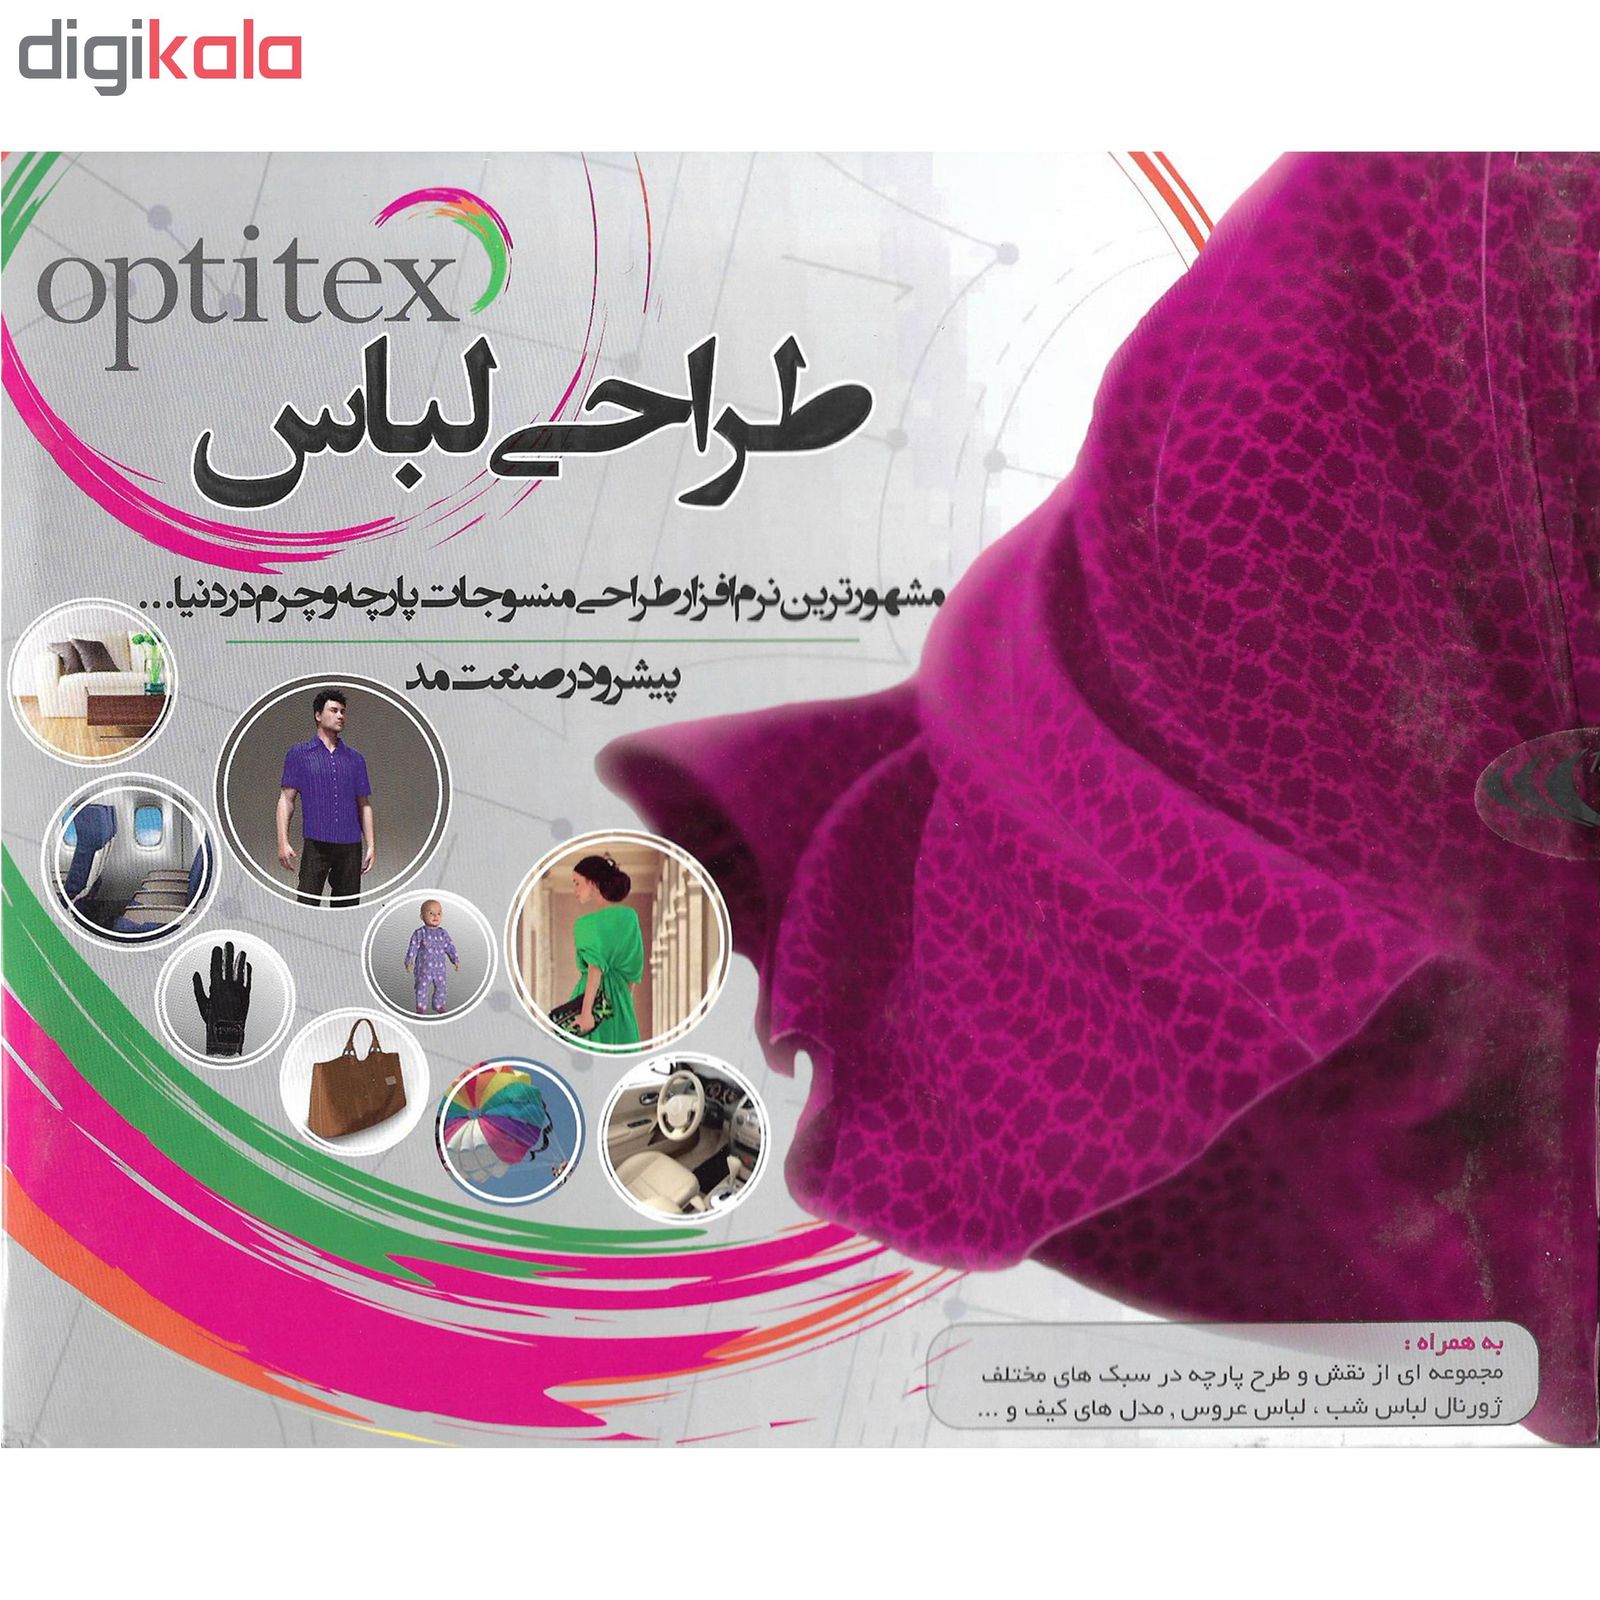 نرم افزار طراحی لباس OPTITEX نشر آویژه